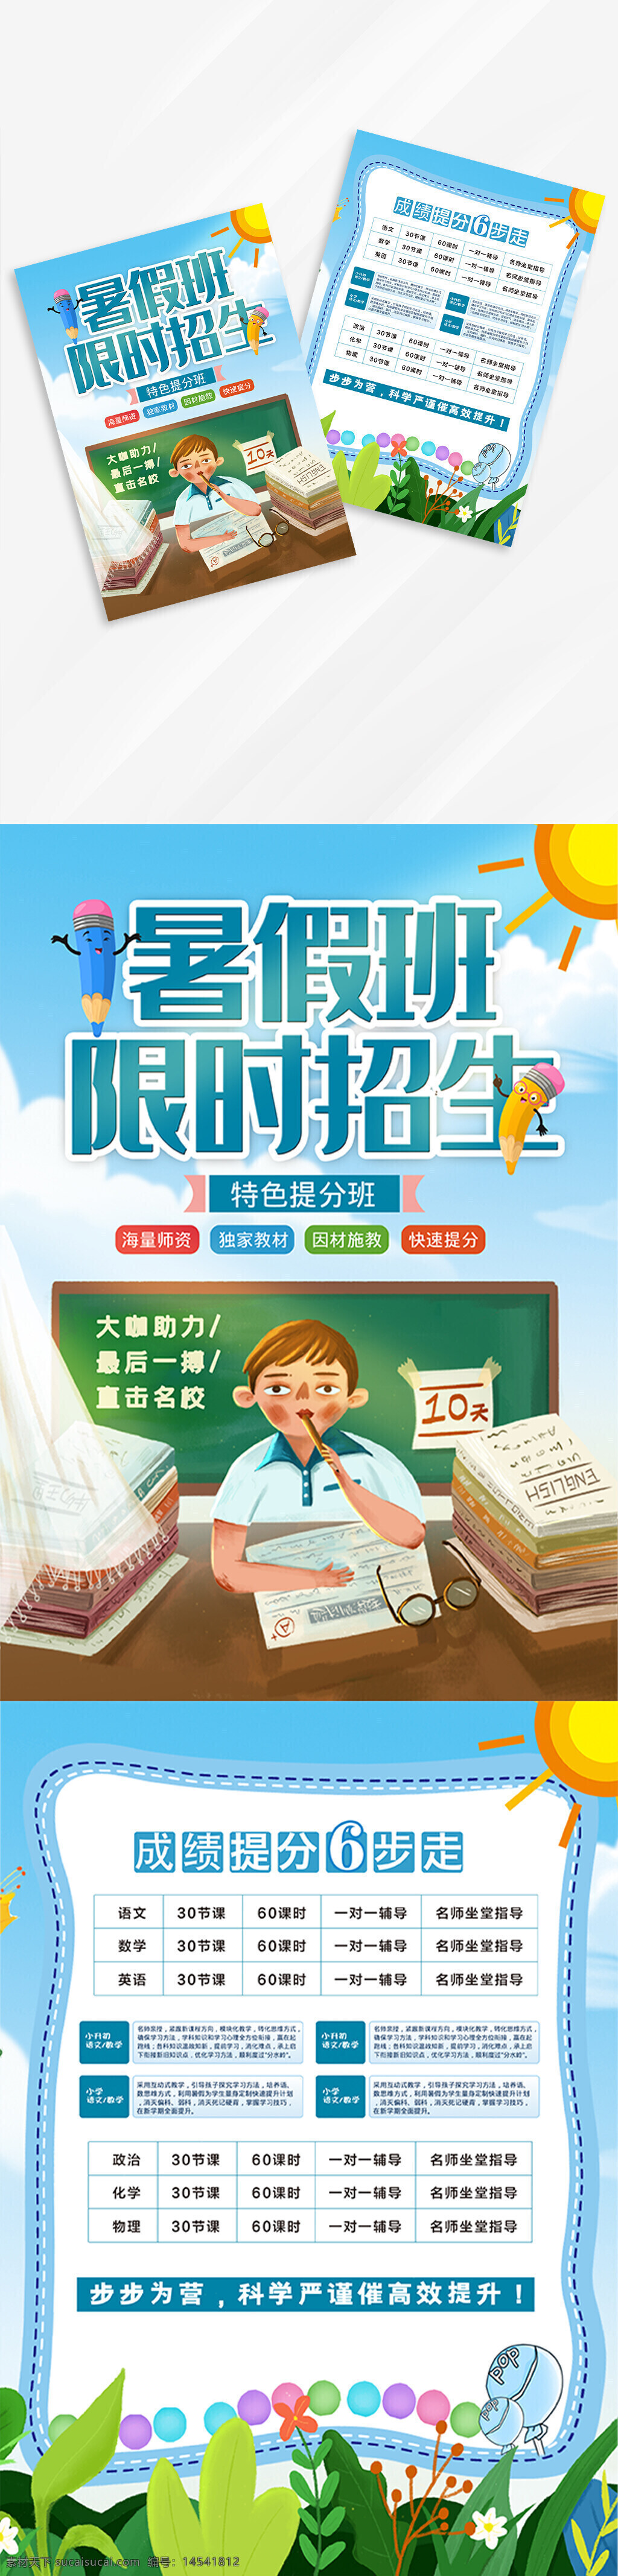 小清新 暑假班 学校 校园 招生 培训 教育 宣传单 模板